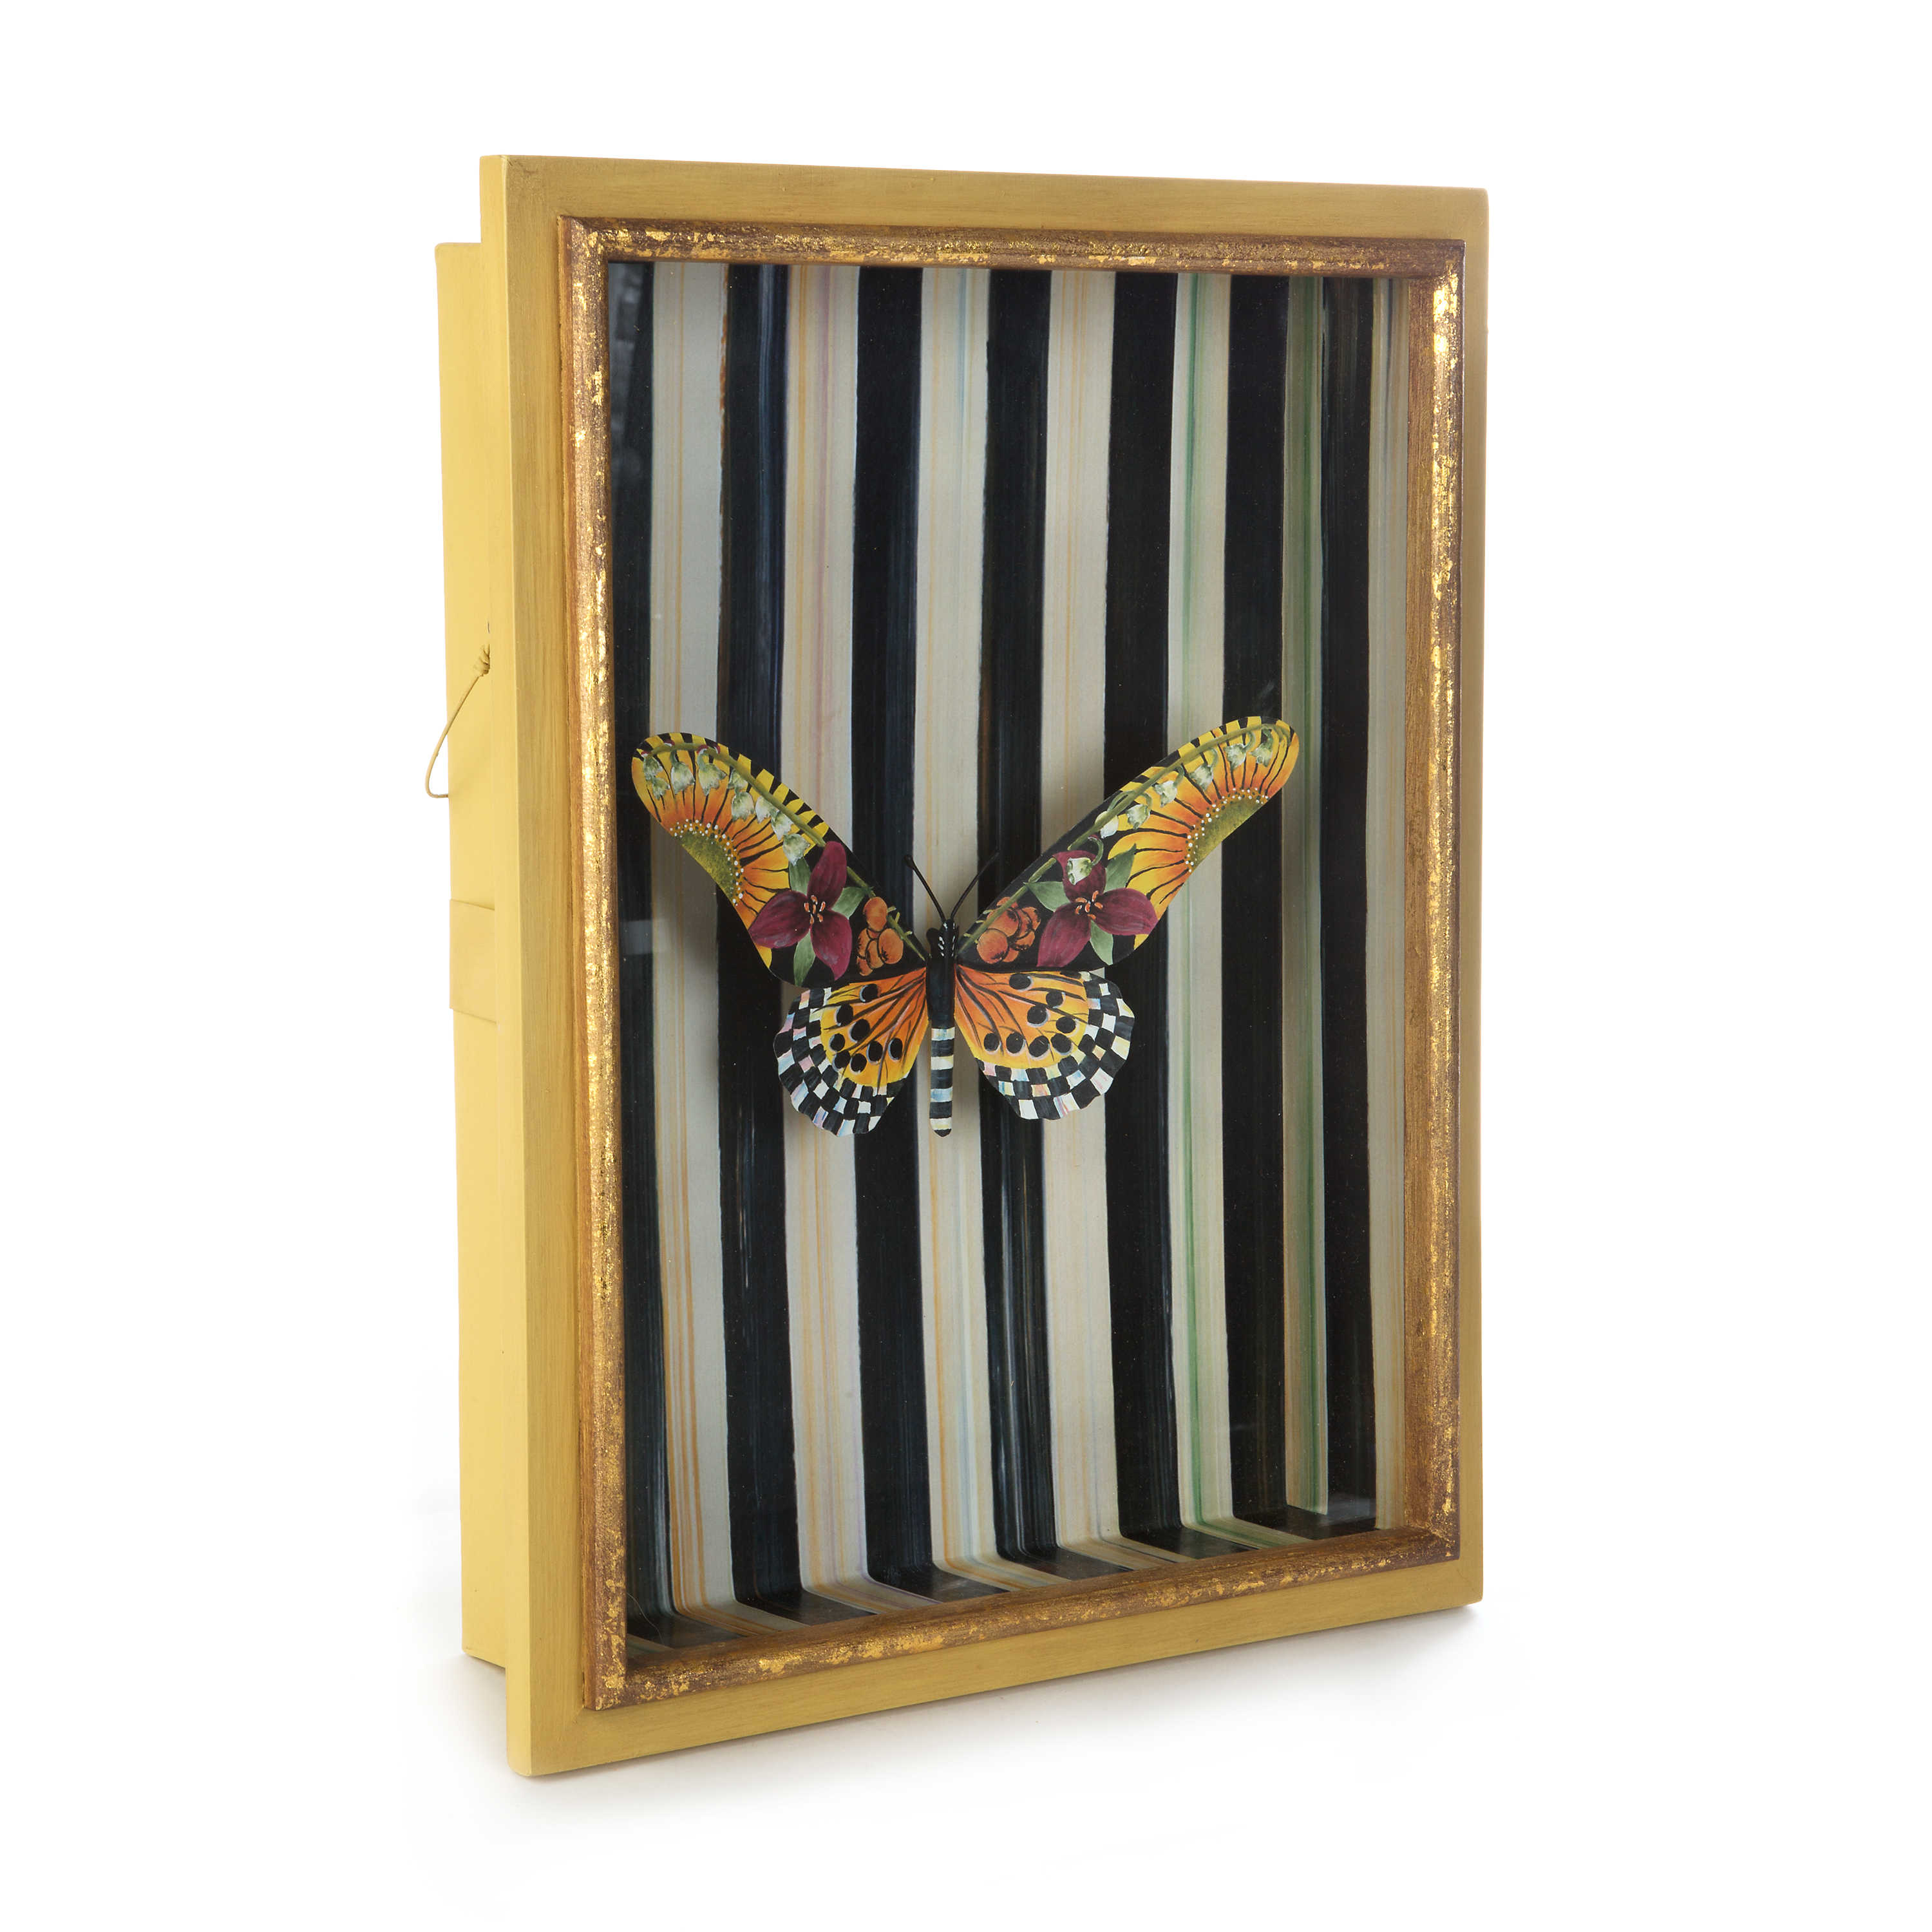 Monarch Butterfly Shadow Box mackenzie-childs Panama 5